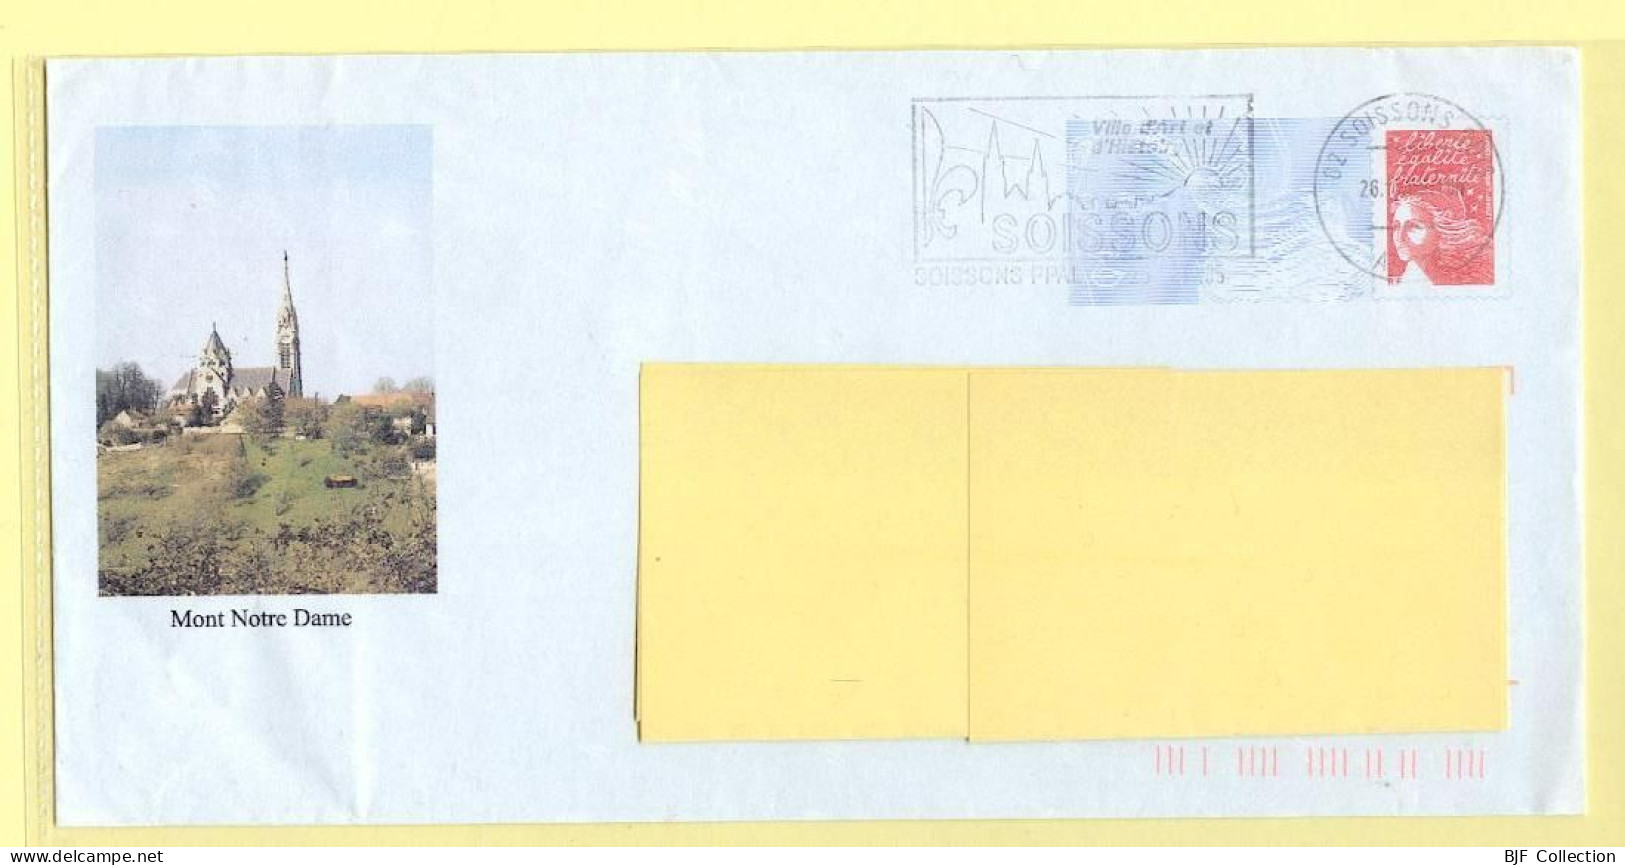 PAP Marianne De Luquet – MONT-NOTRE-DAME (02) (N° 809 – Lot B2J/0401018) – 26/10/2005 - Prêts-à-poster:Overprinting/Luquet